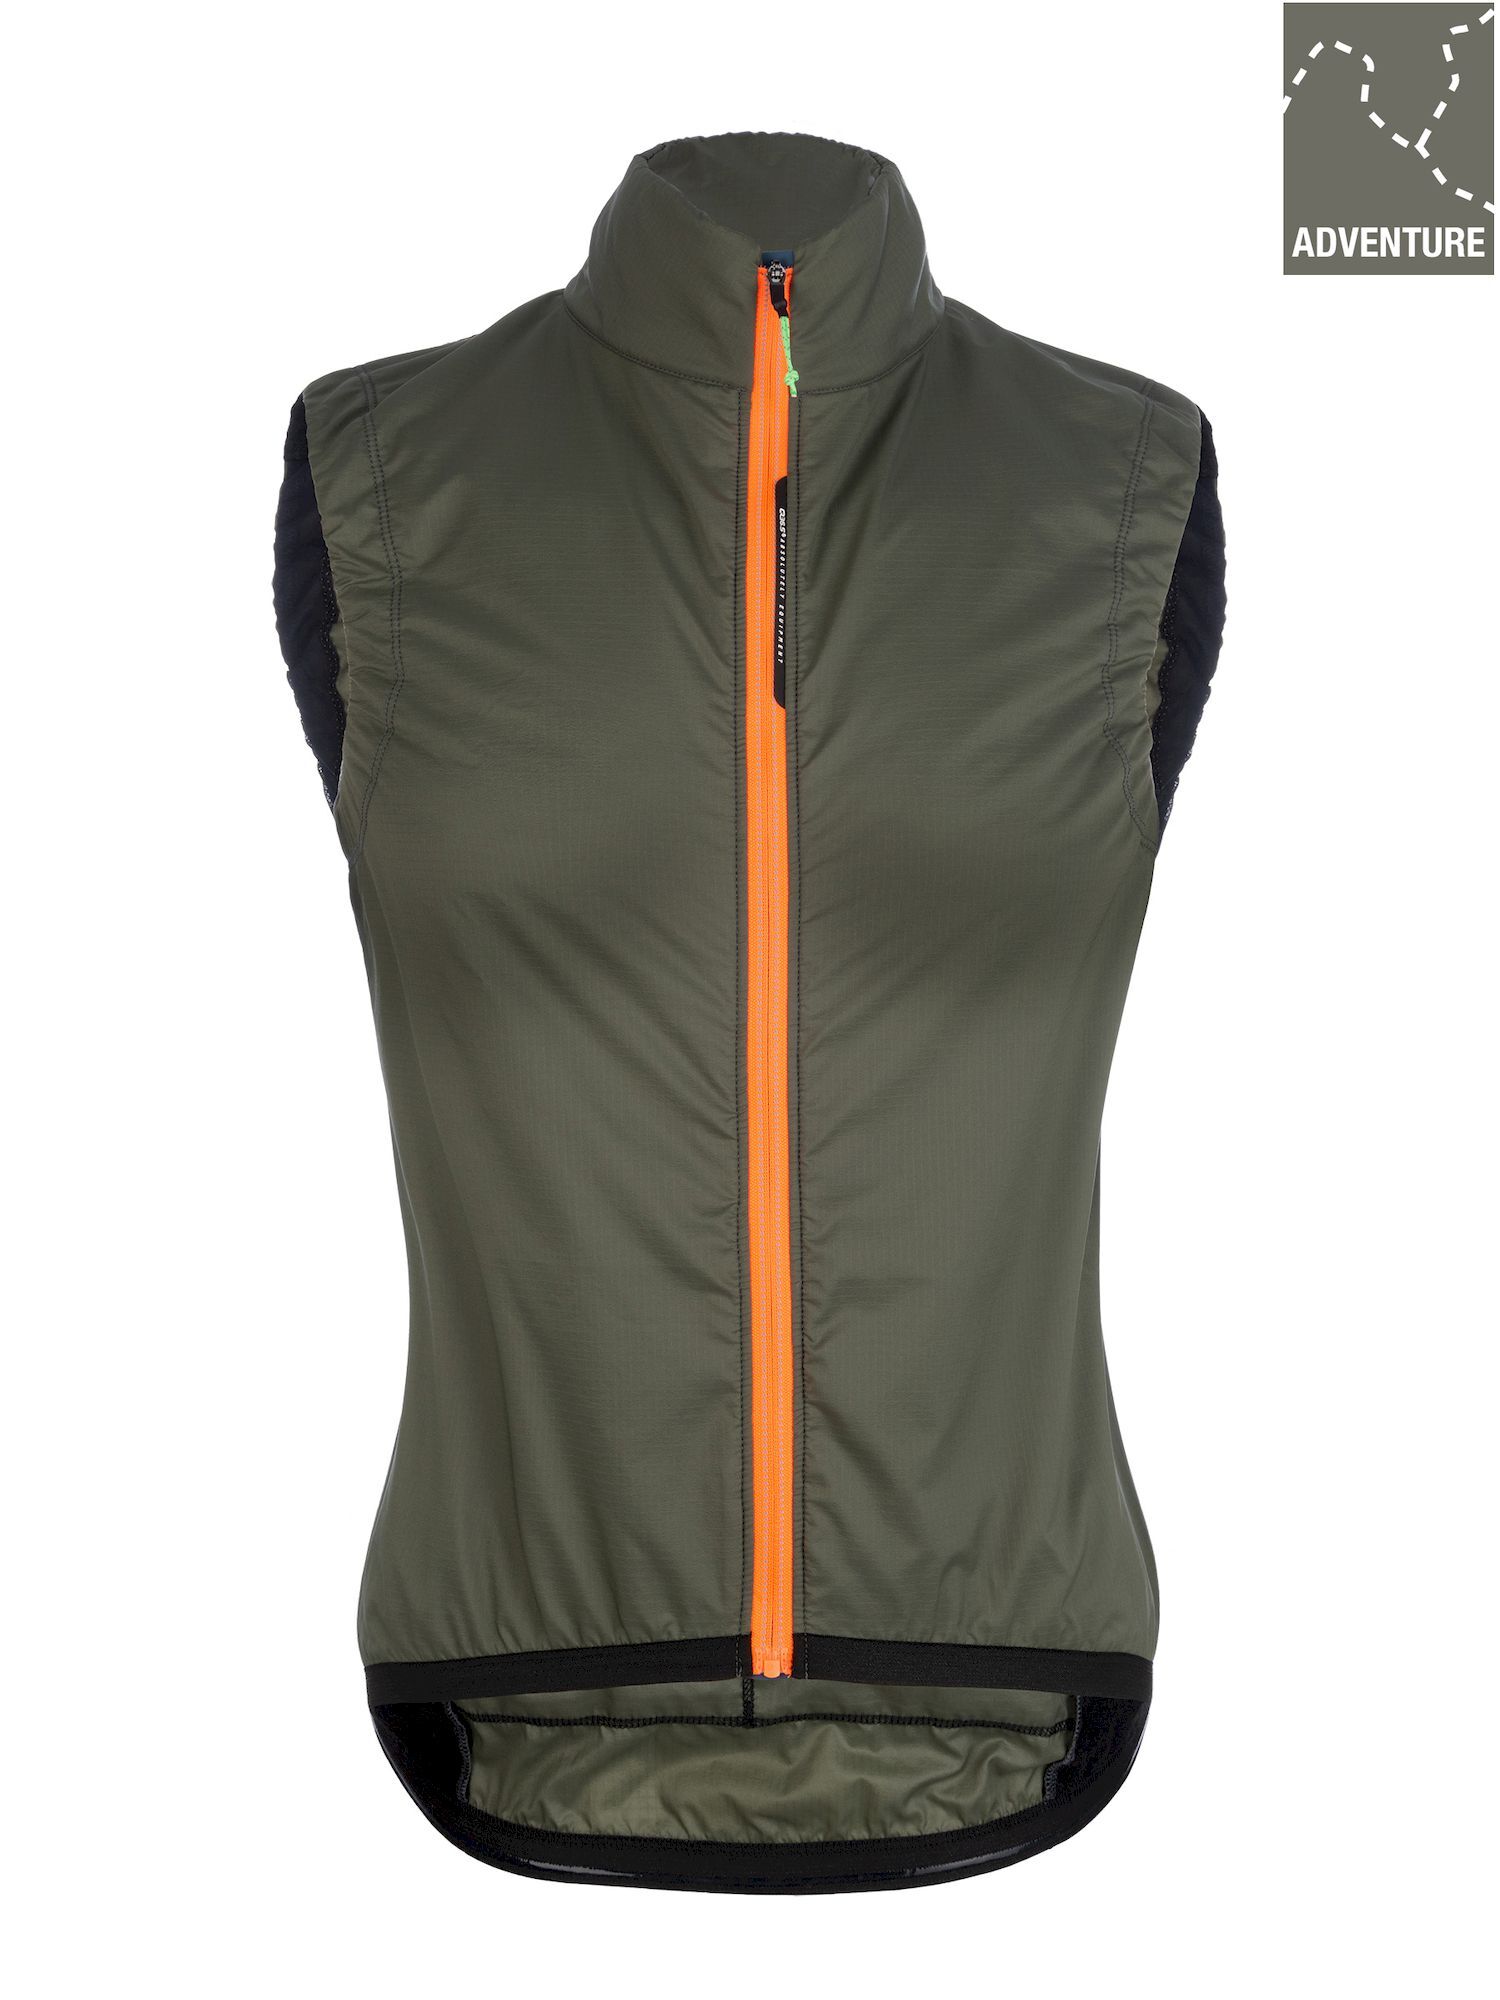 Q36.5 Adventure Women’s Insulation Vest Black - Cycling vest - Women's